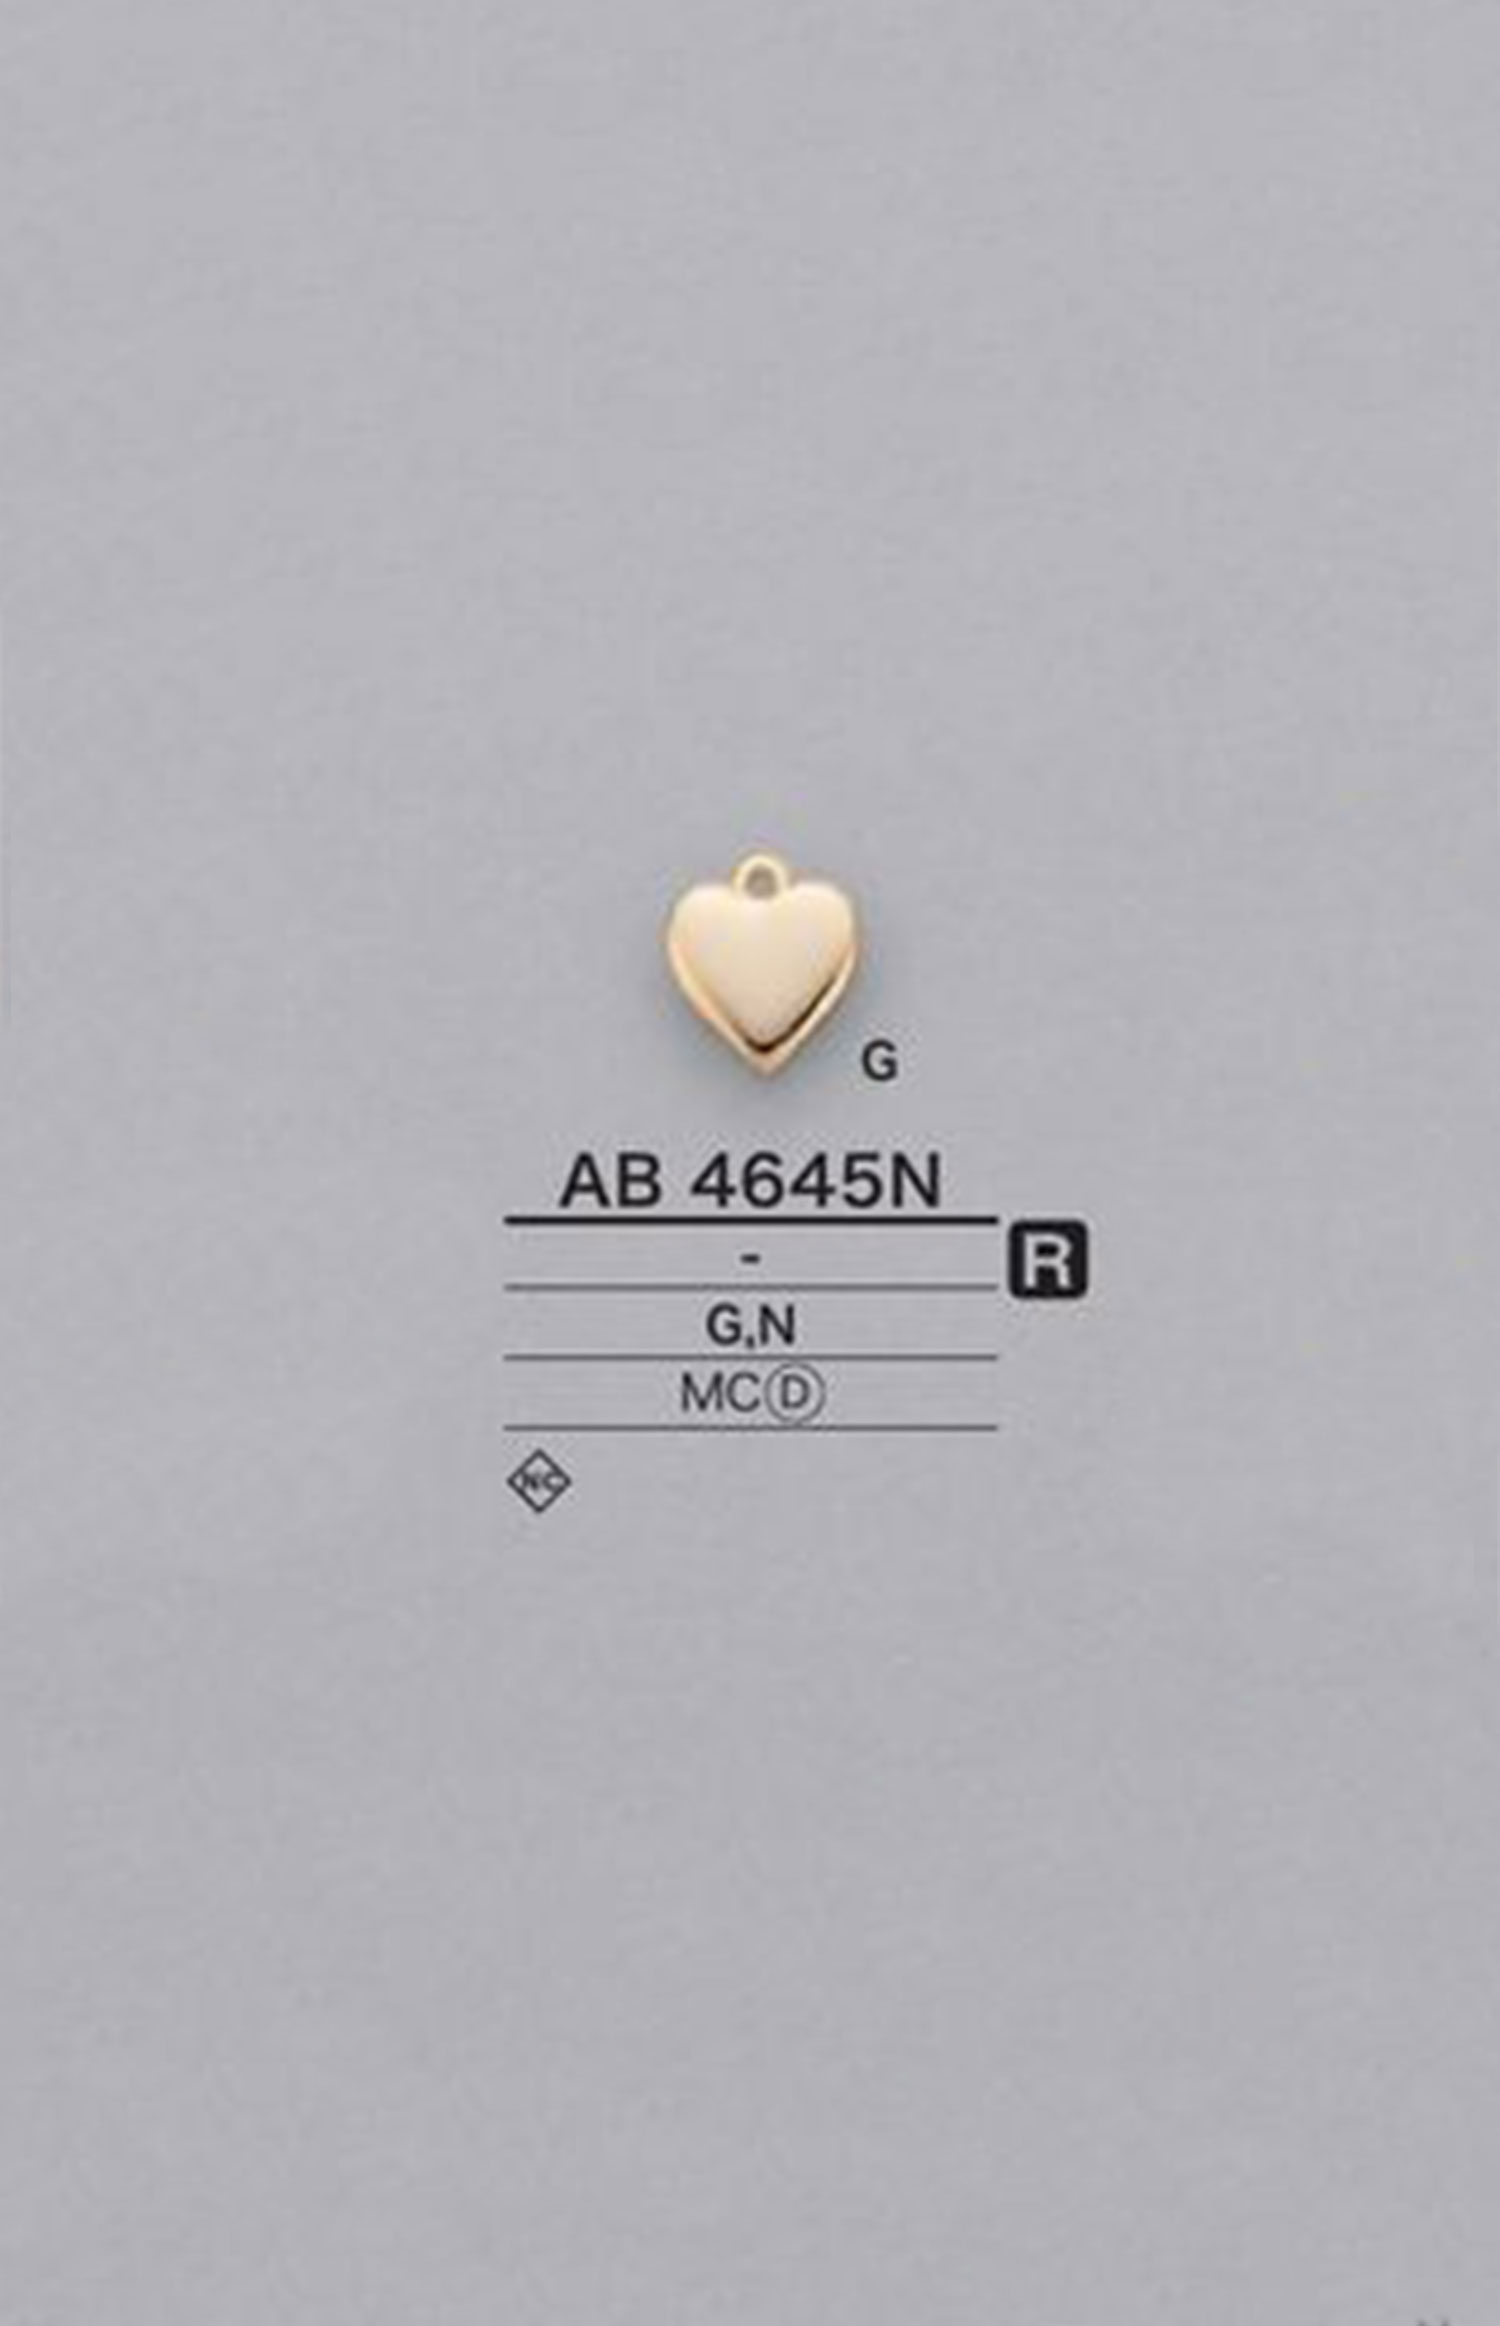 AB4645N 心形圖形元素零件[雜貨等] 愛麗絲鈕扣